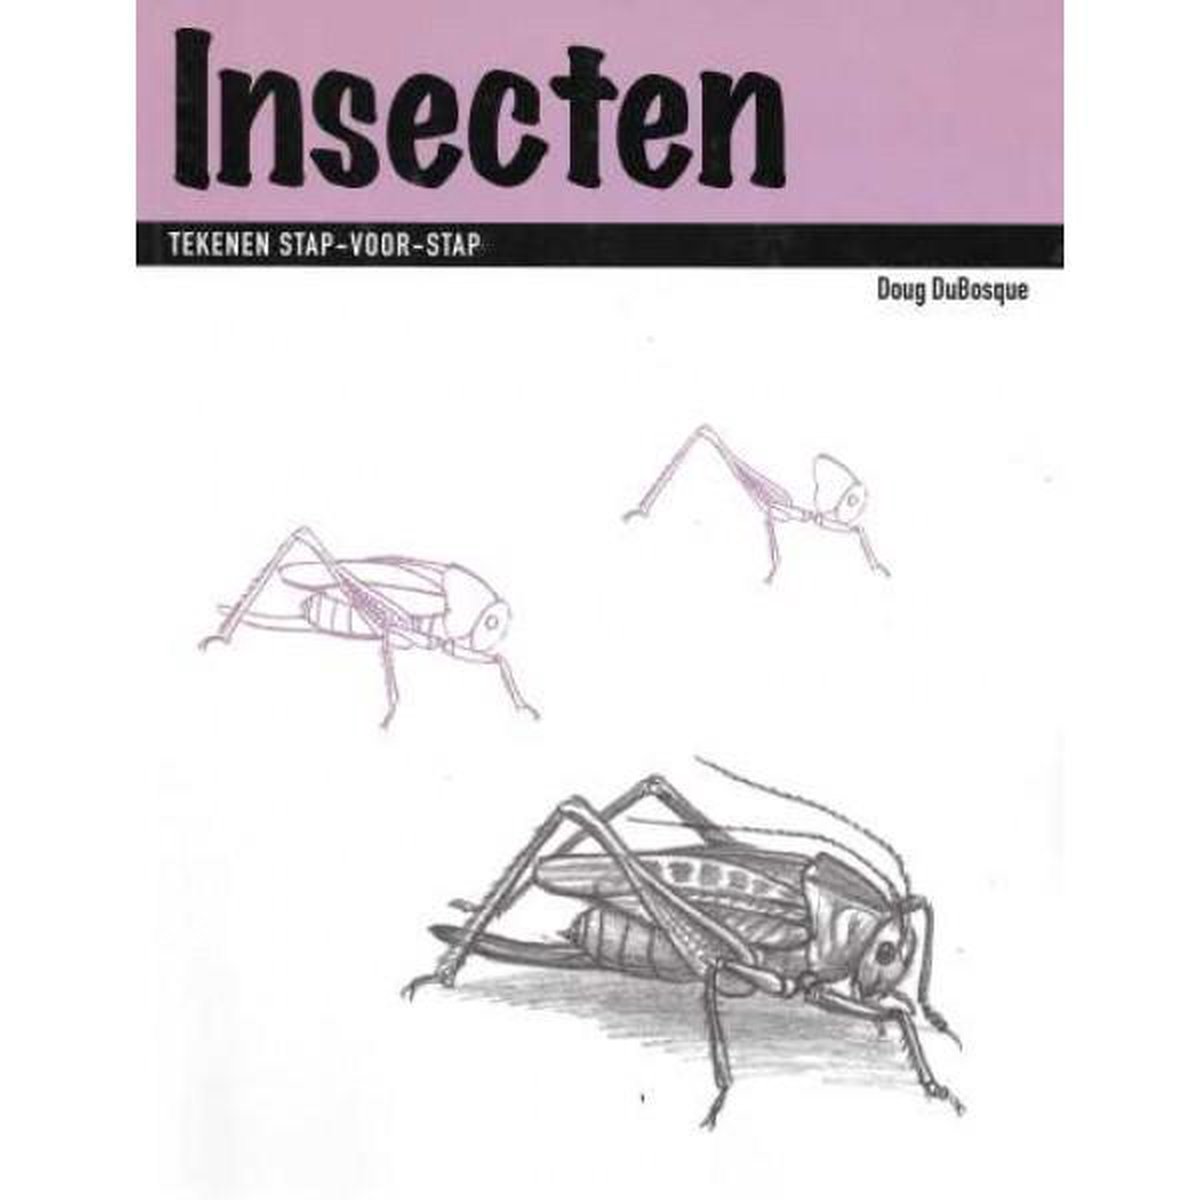 Insecten Tekenen stap-voor-stap